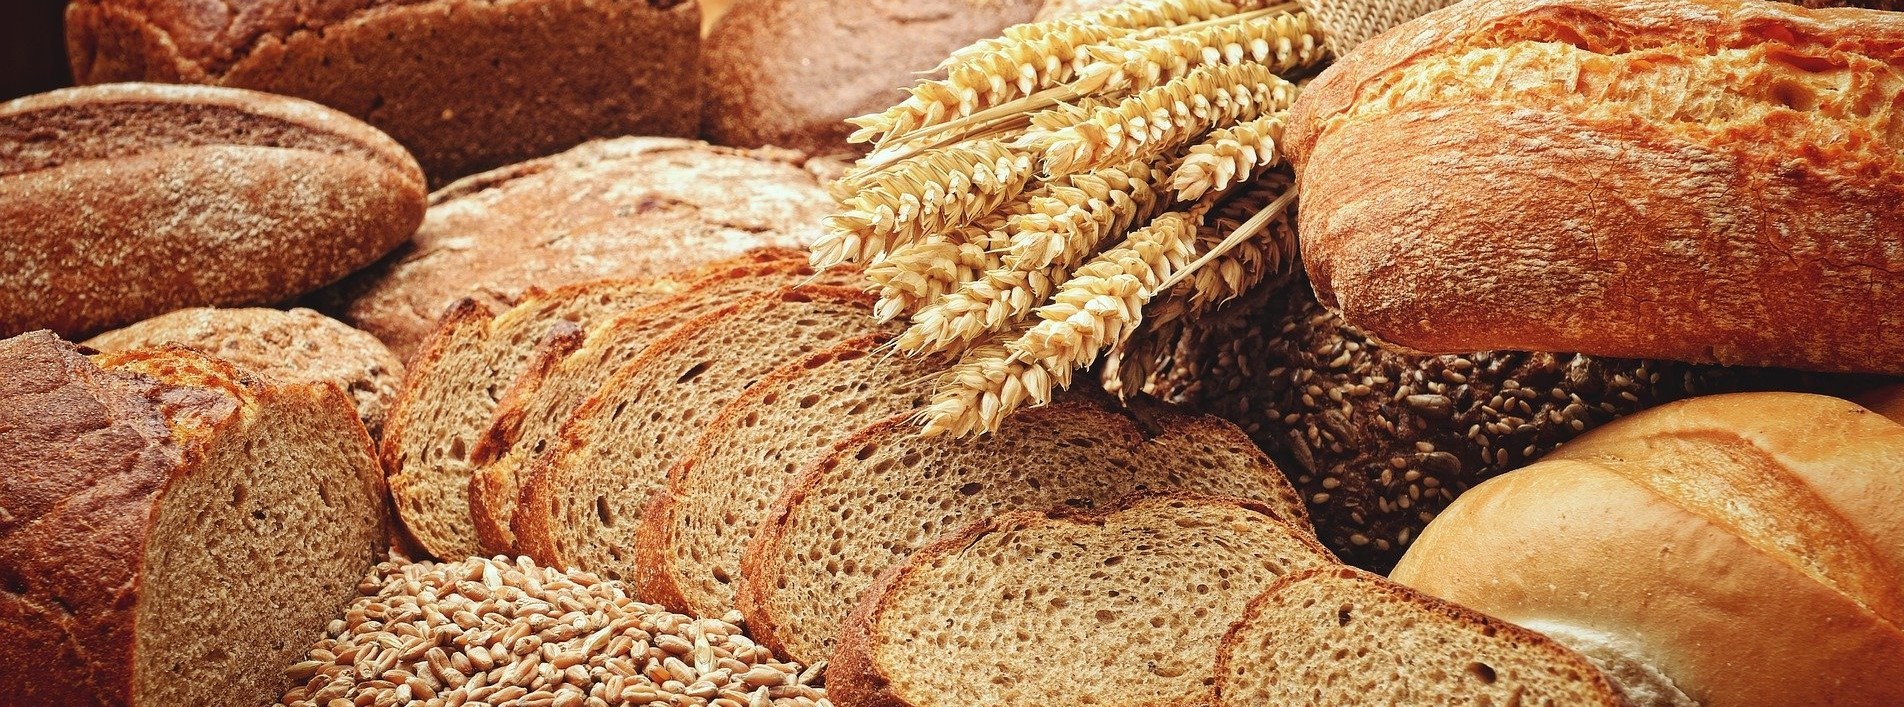 Wspaniała mąka chlebowa